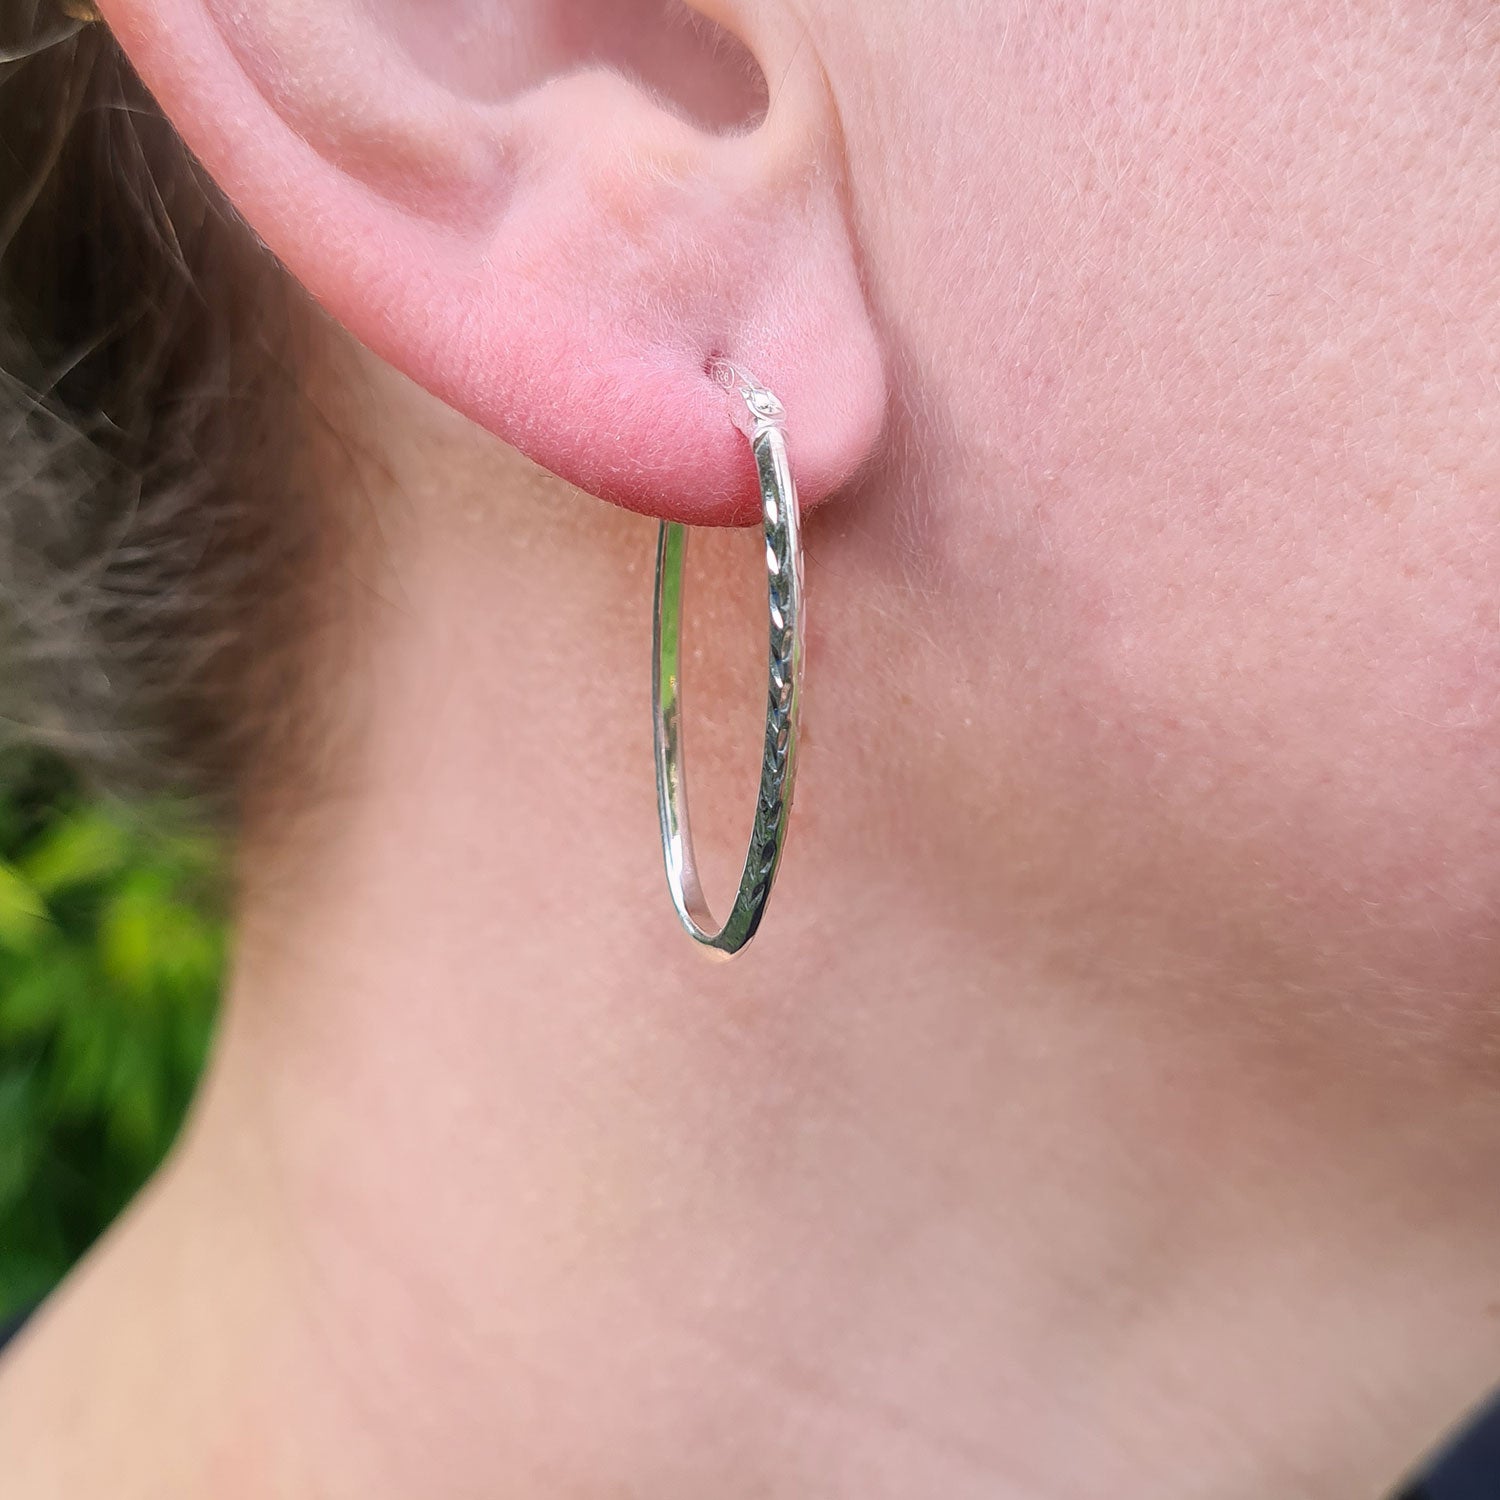 oval hoop earrings in ladies ear